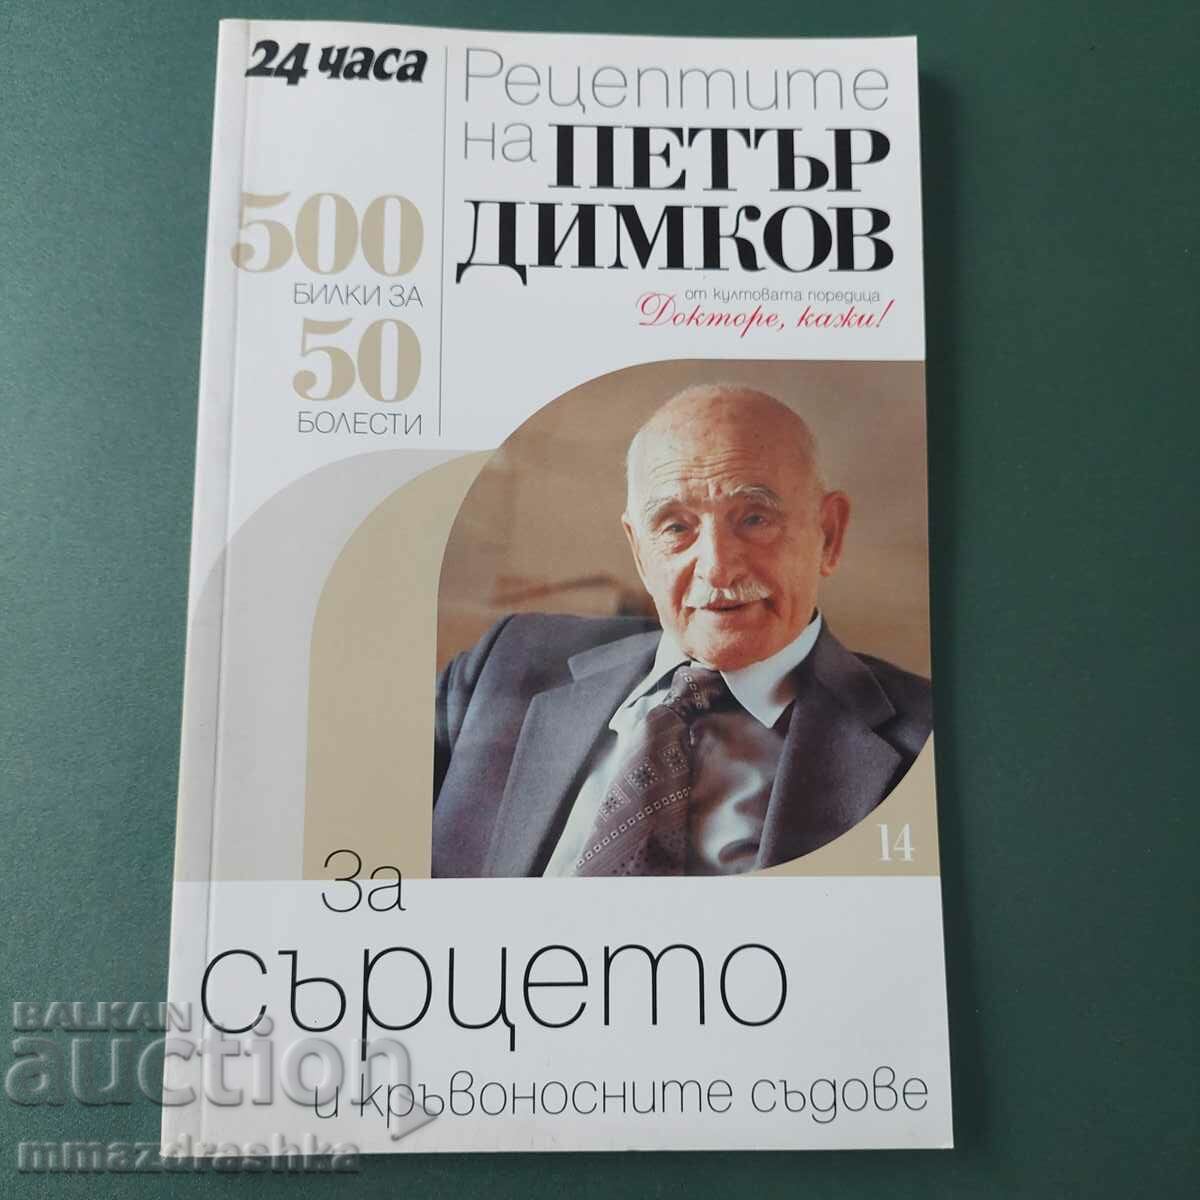 500 de rețete pentru inimă, Petar Dimkov